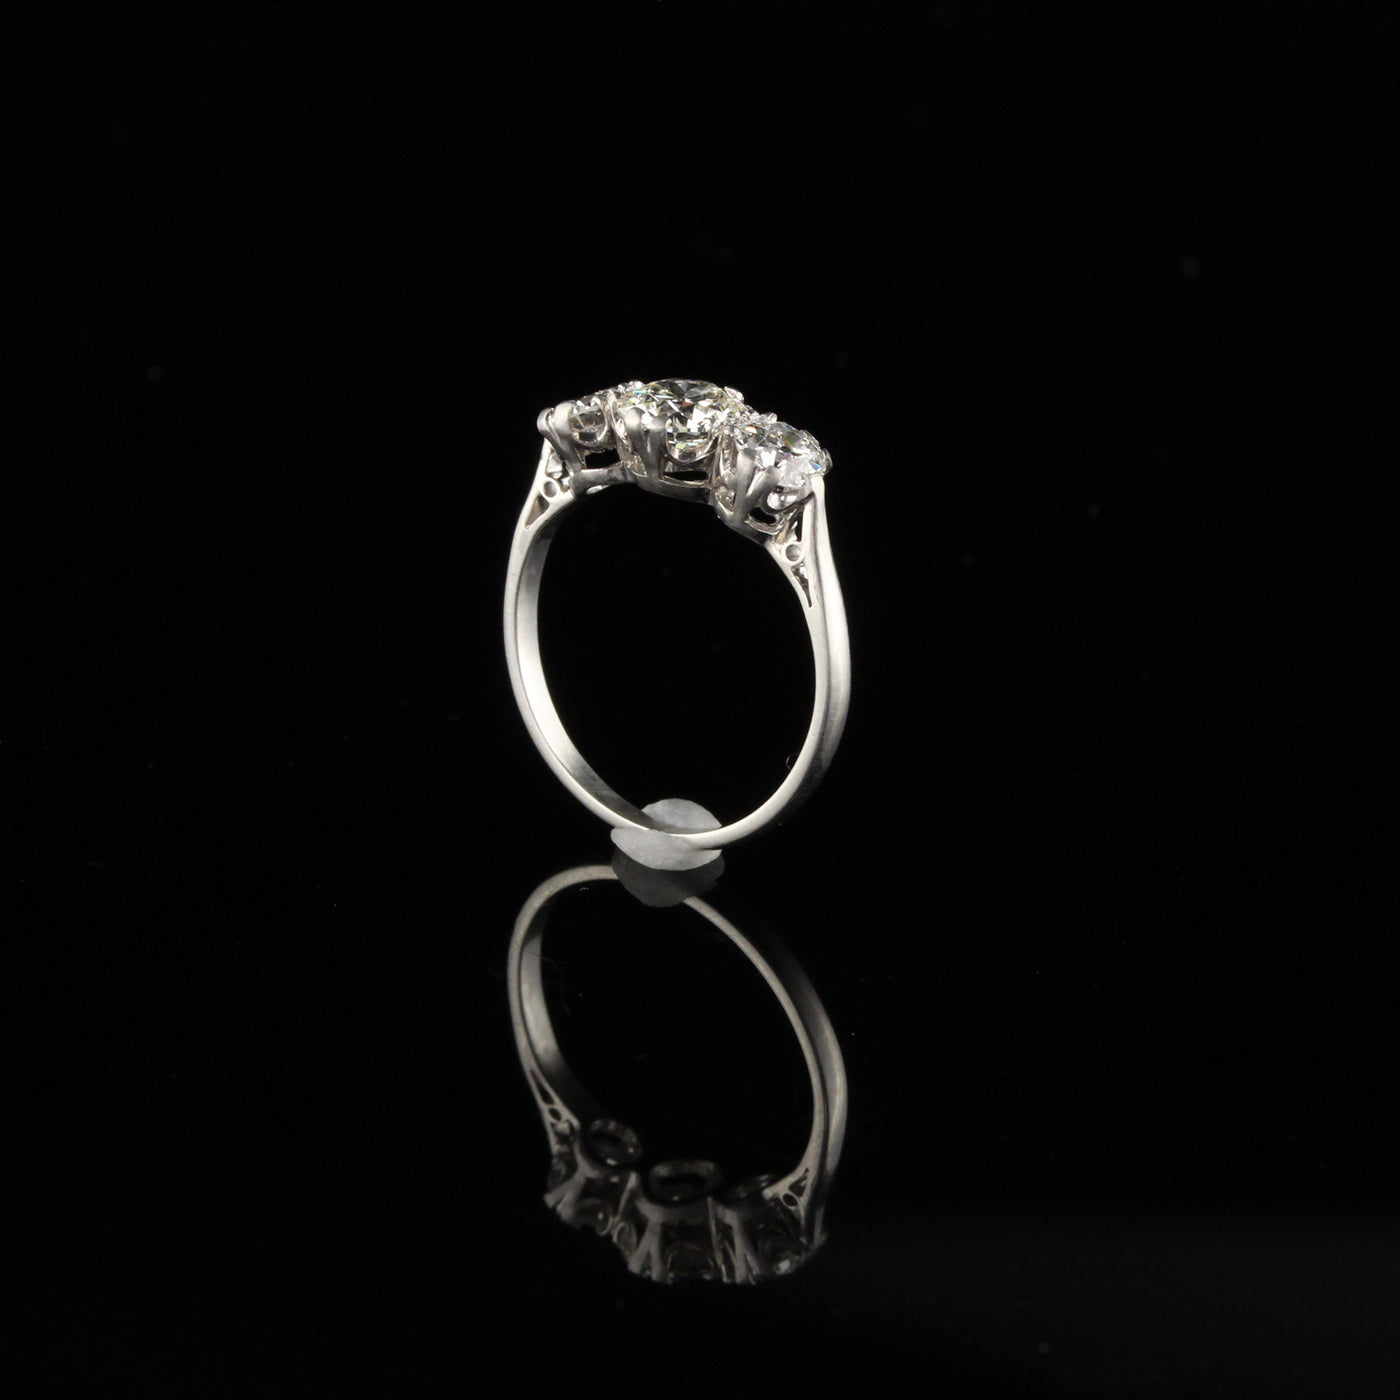 Antique Art Deco Platinum Diamond Engagement Ring - Size 4 3/4